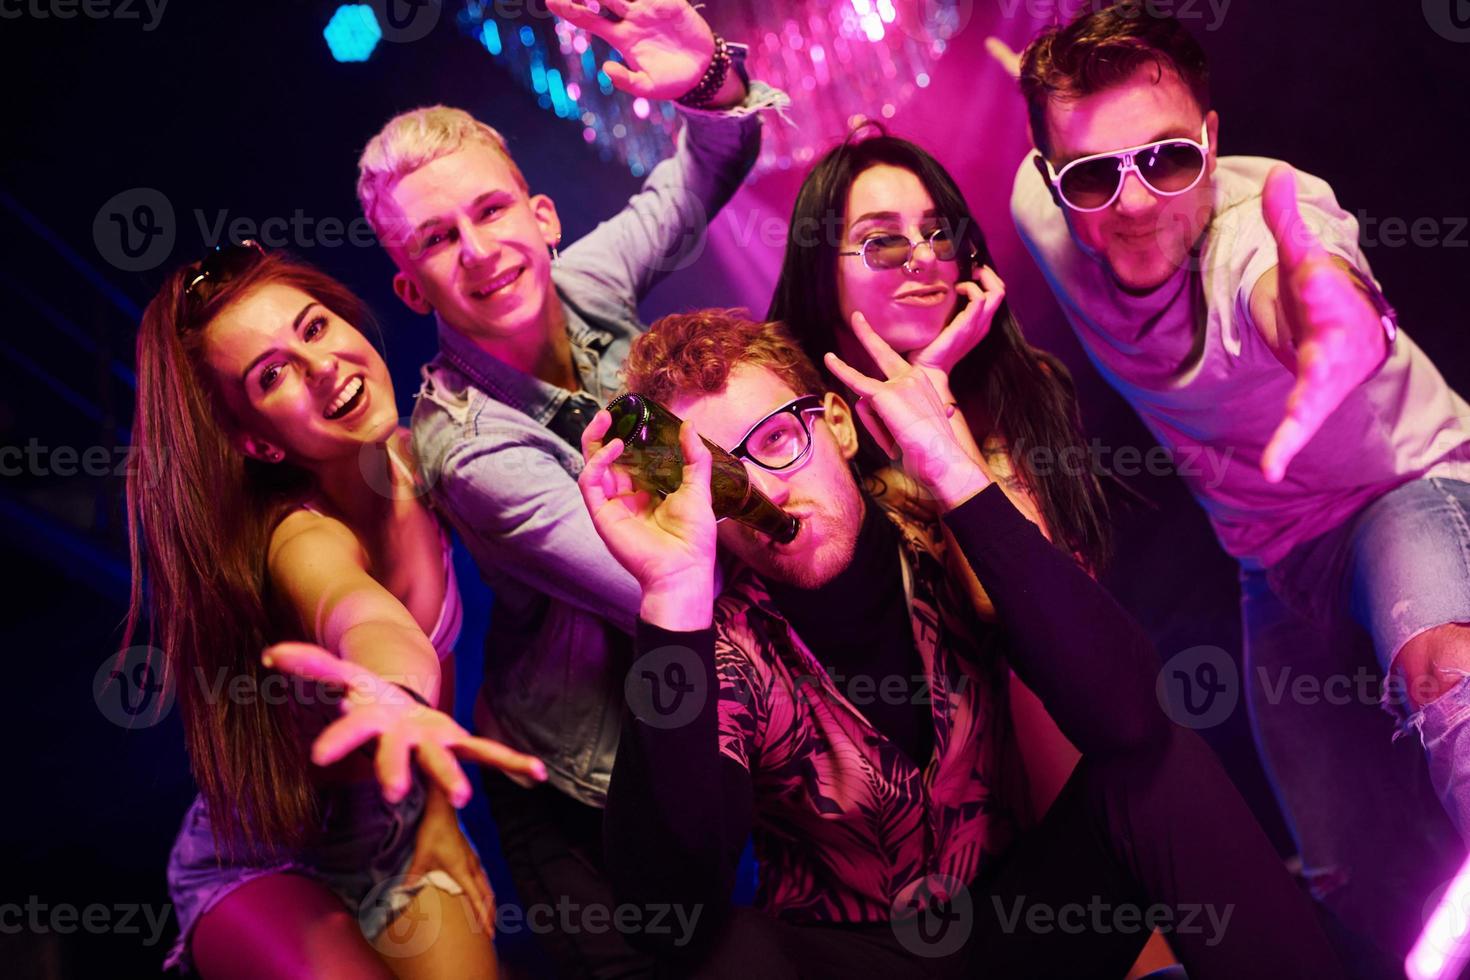 volviéndose locos y posando juntos para la cámara. los jóvenes se divierten en el club nocturno con luces láser de colores foto